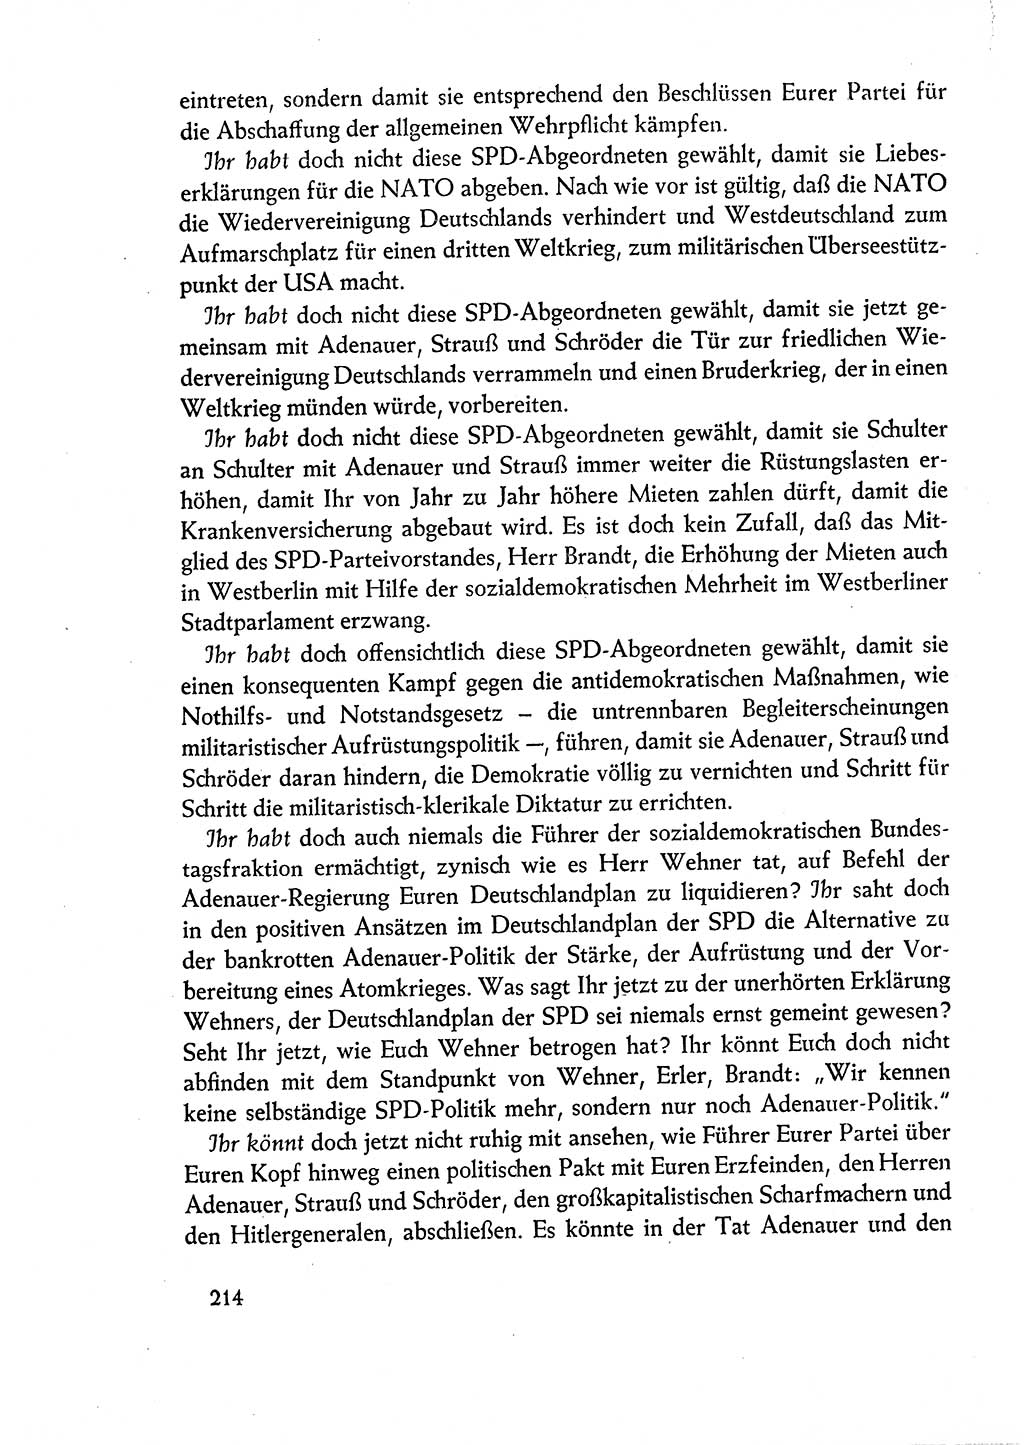 Dokumente der Sozialistischen Einheitspartei Deutschlands (SED) [Deutsche Demokratische Republik (DDR)] 1960-1961, Seite 214 (Dok. SED DDR 1960-1961, S. 214)